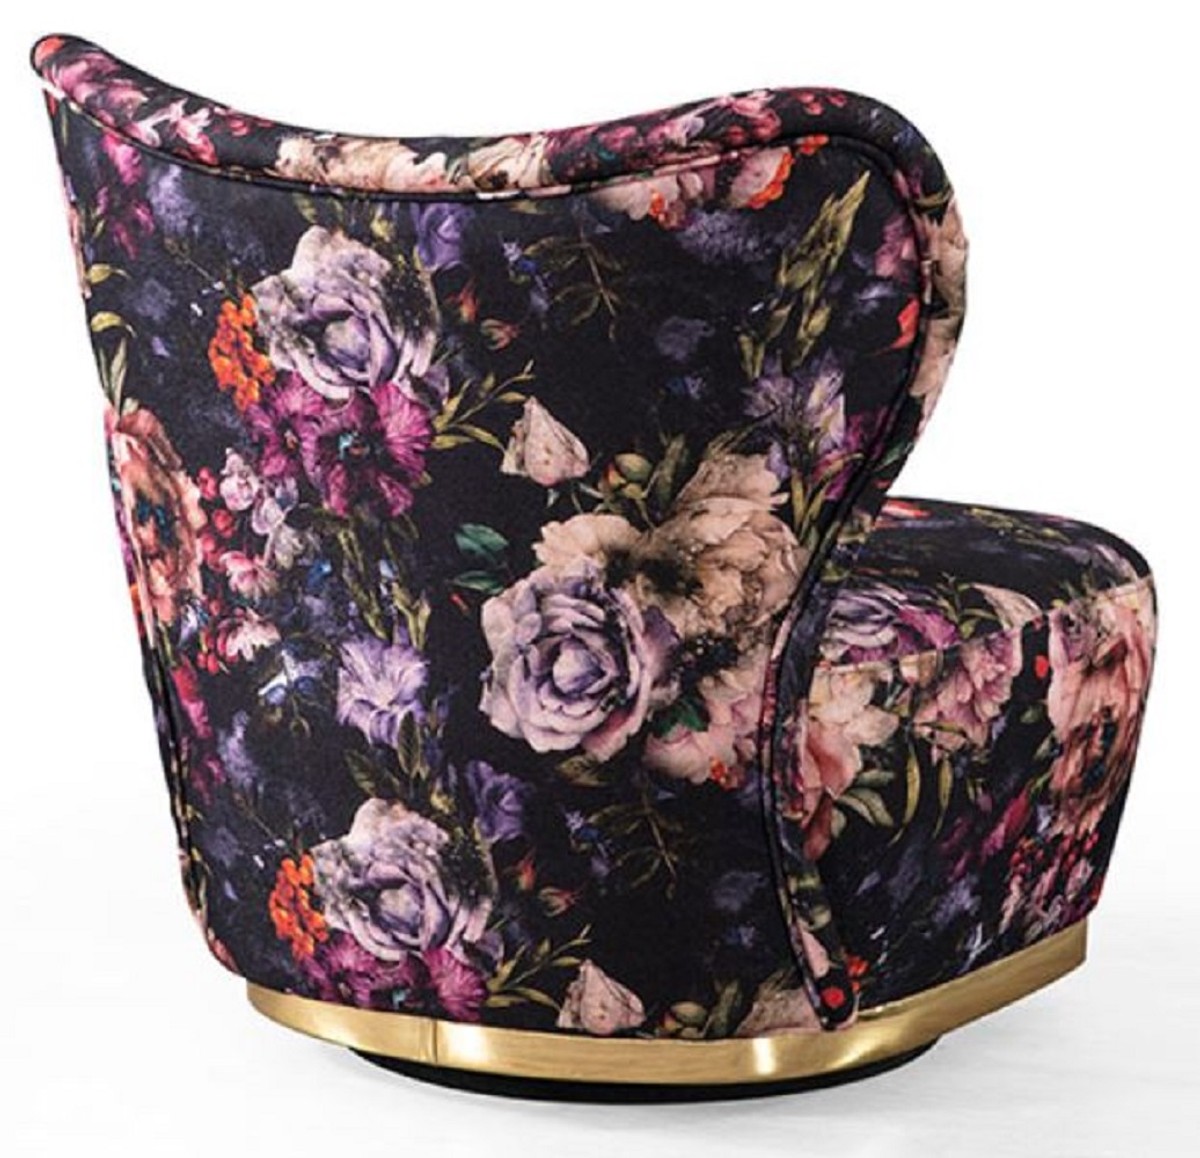 Casa Padrino Luxus Sessel Schwarz / Mehrfarbig / Gold   Moderner Wohnzimmer  Sessel mit Blumenmuster   Moderne Wohnzimmer Möbel   Luxus Kollektion